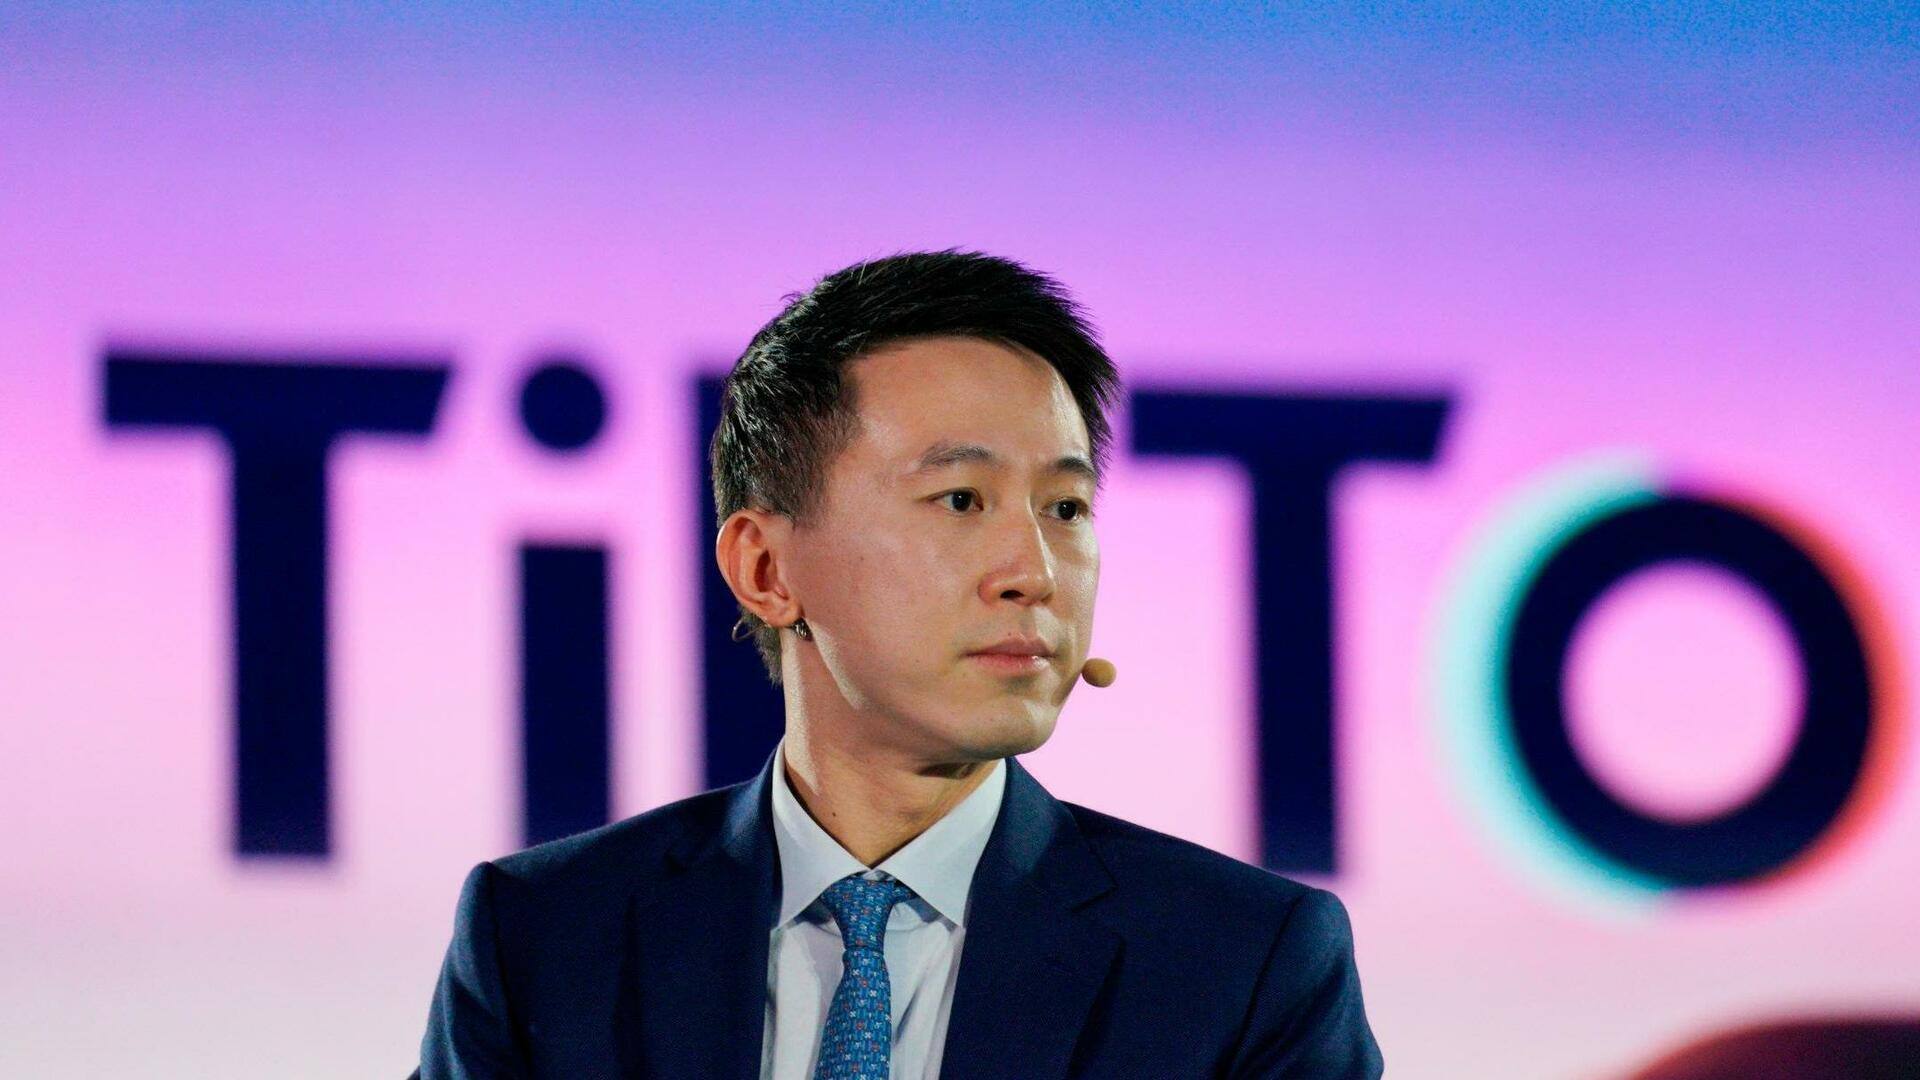 टिक-टॉक CEO शो जी च्यू ने फेसबुक में की थी इंटर्नशिप, आज इतनी है उनकी संपत्ति